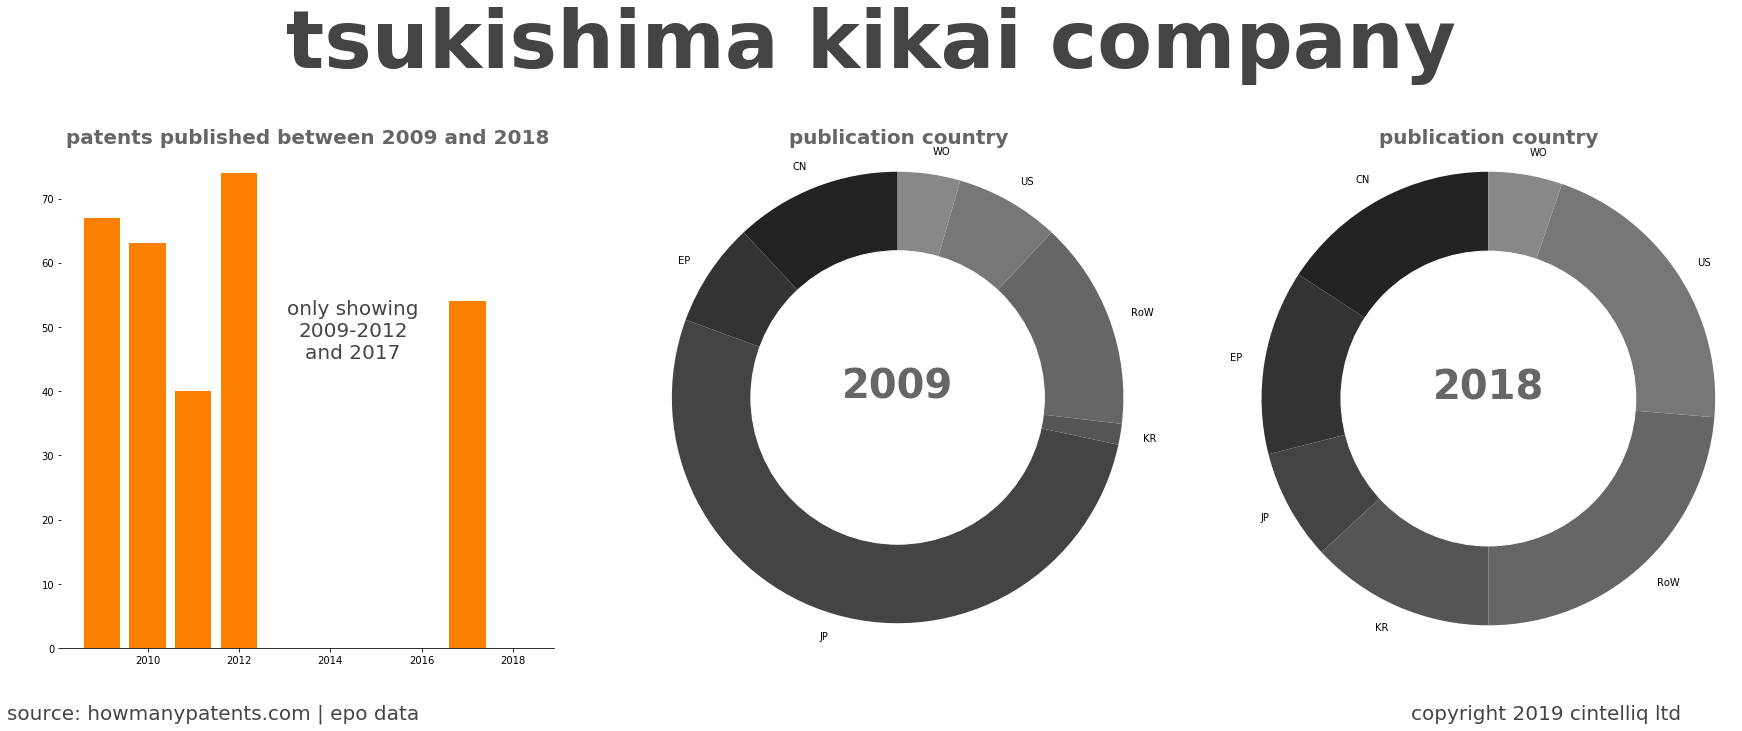 summary of patents for Tsukishima Kikai Company